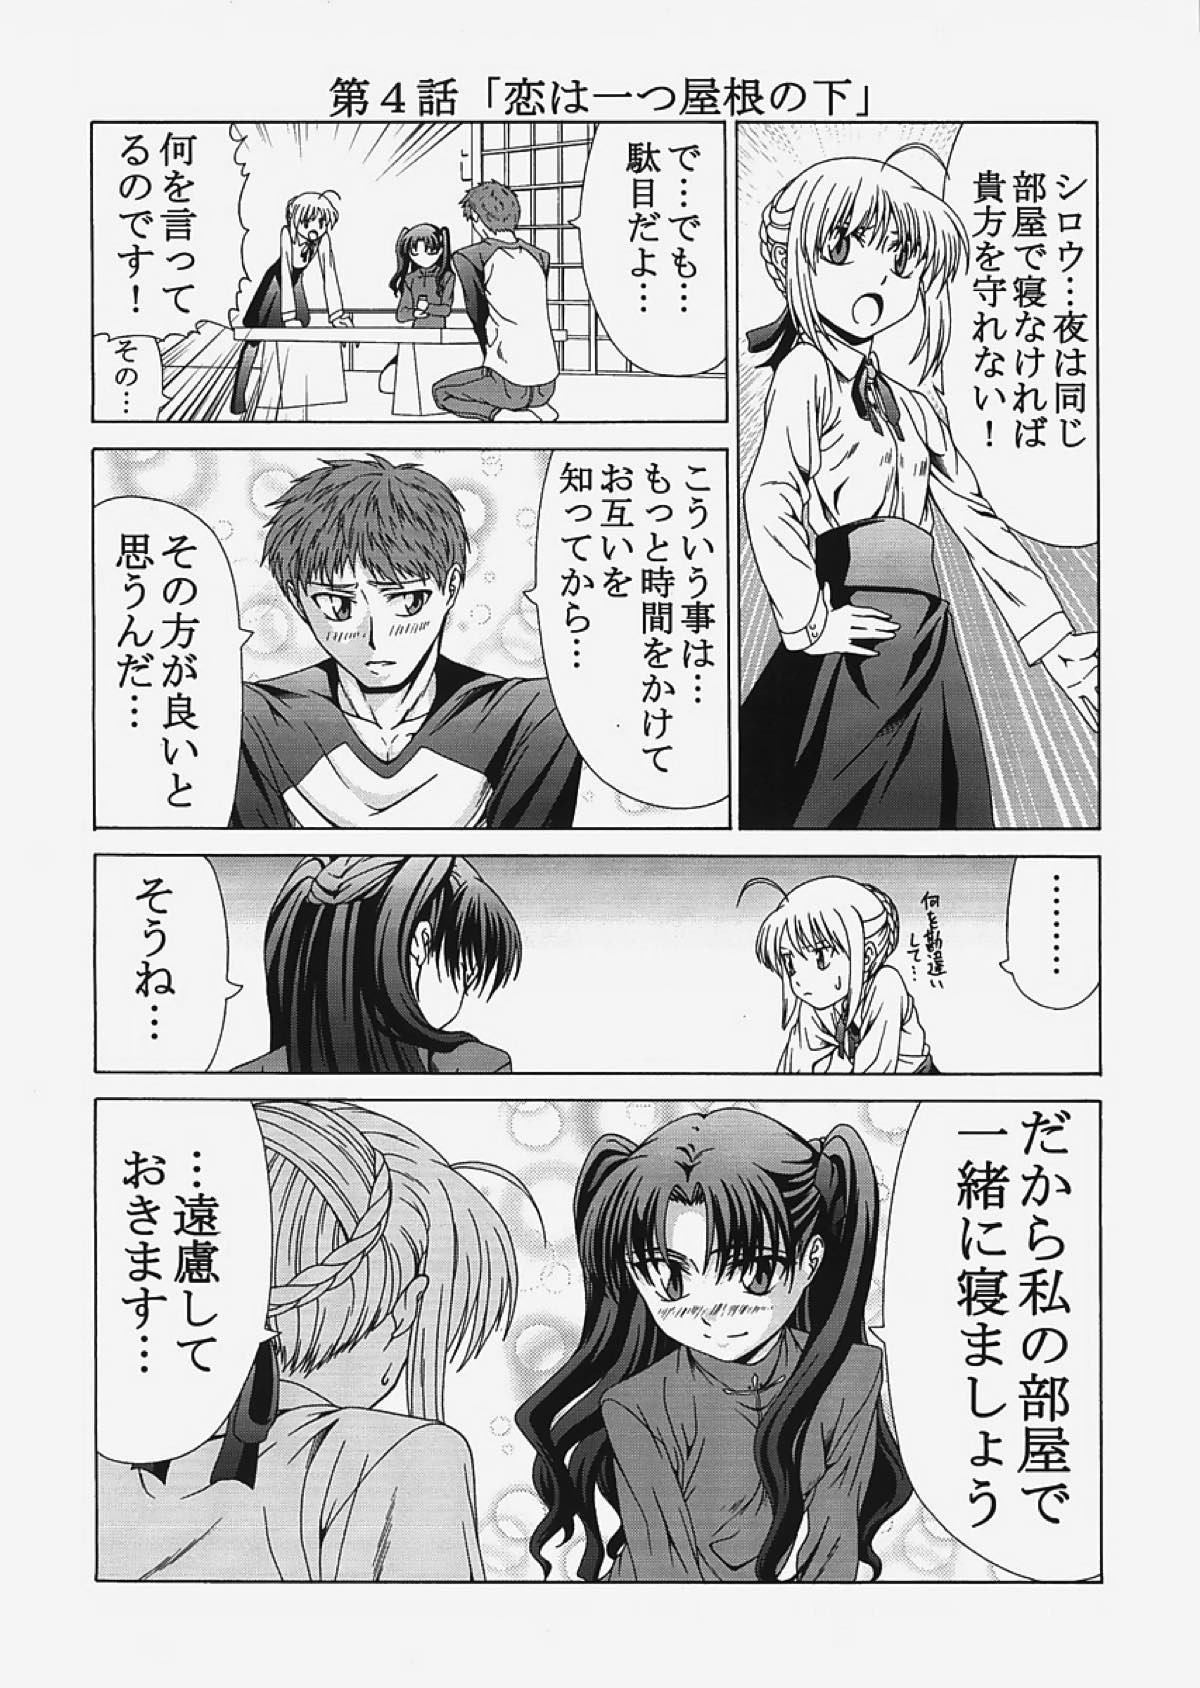 saber〜ヒロユキFate同人誌総集編+α〜 12ページ